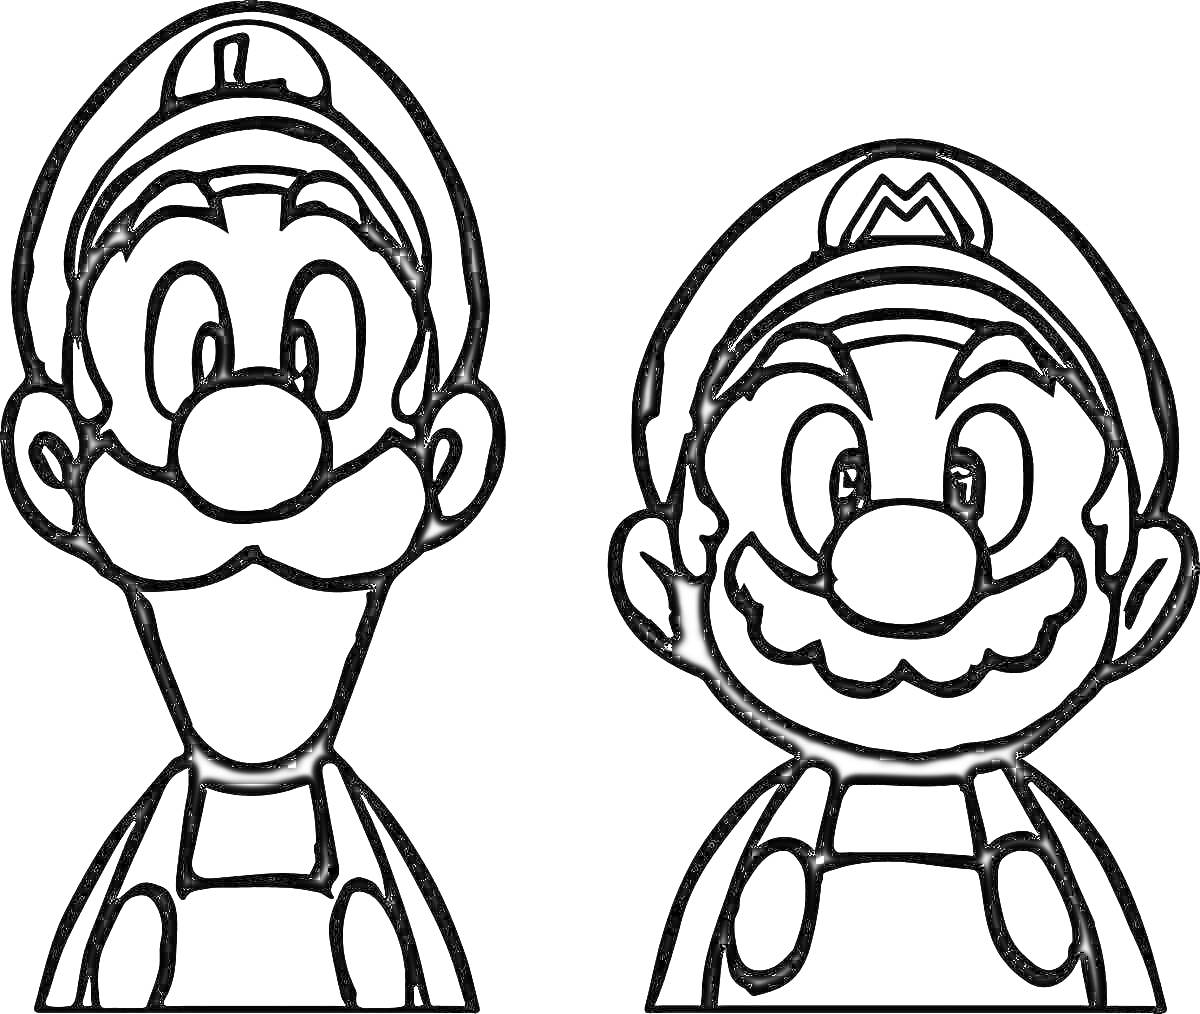 Раскраска Луиджи и Марио в шляпах, крупный план лиц